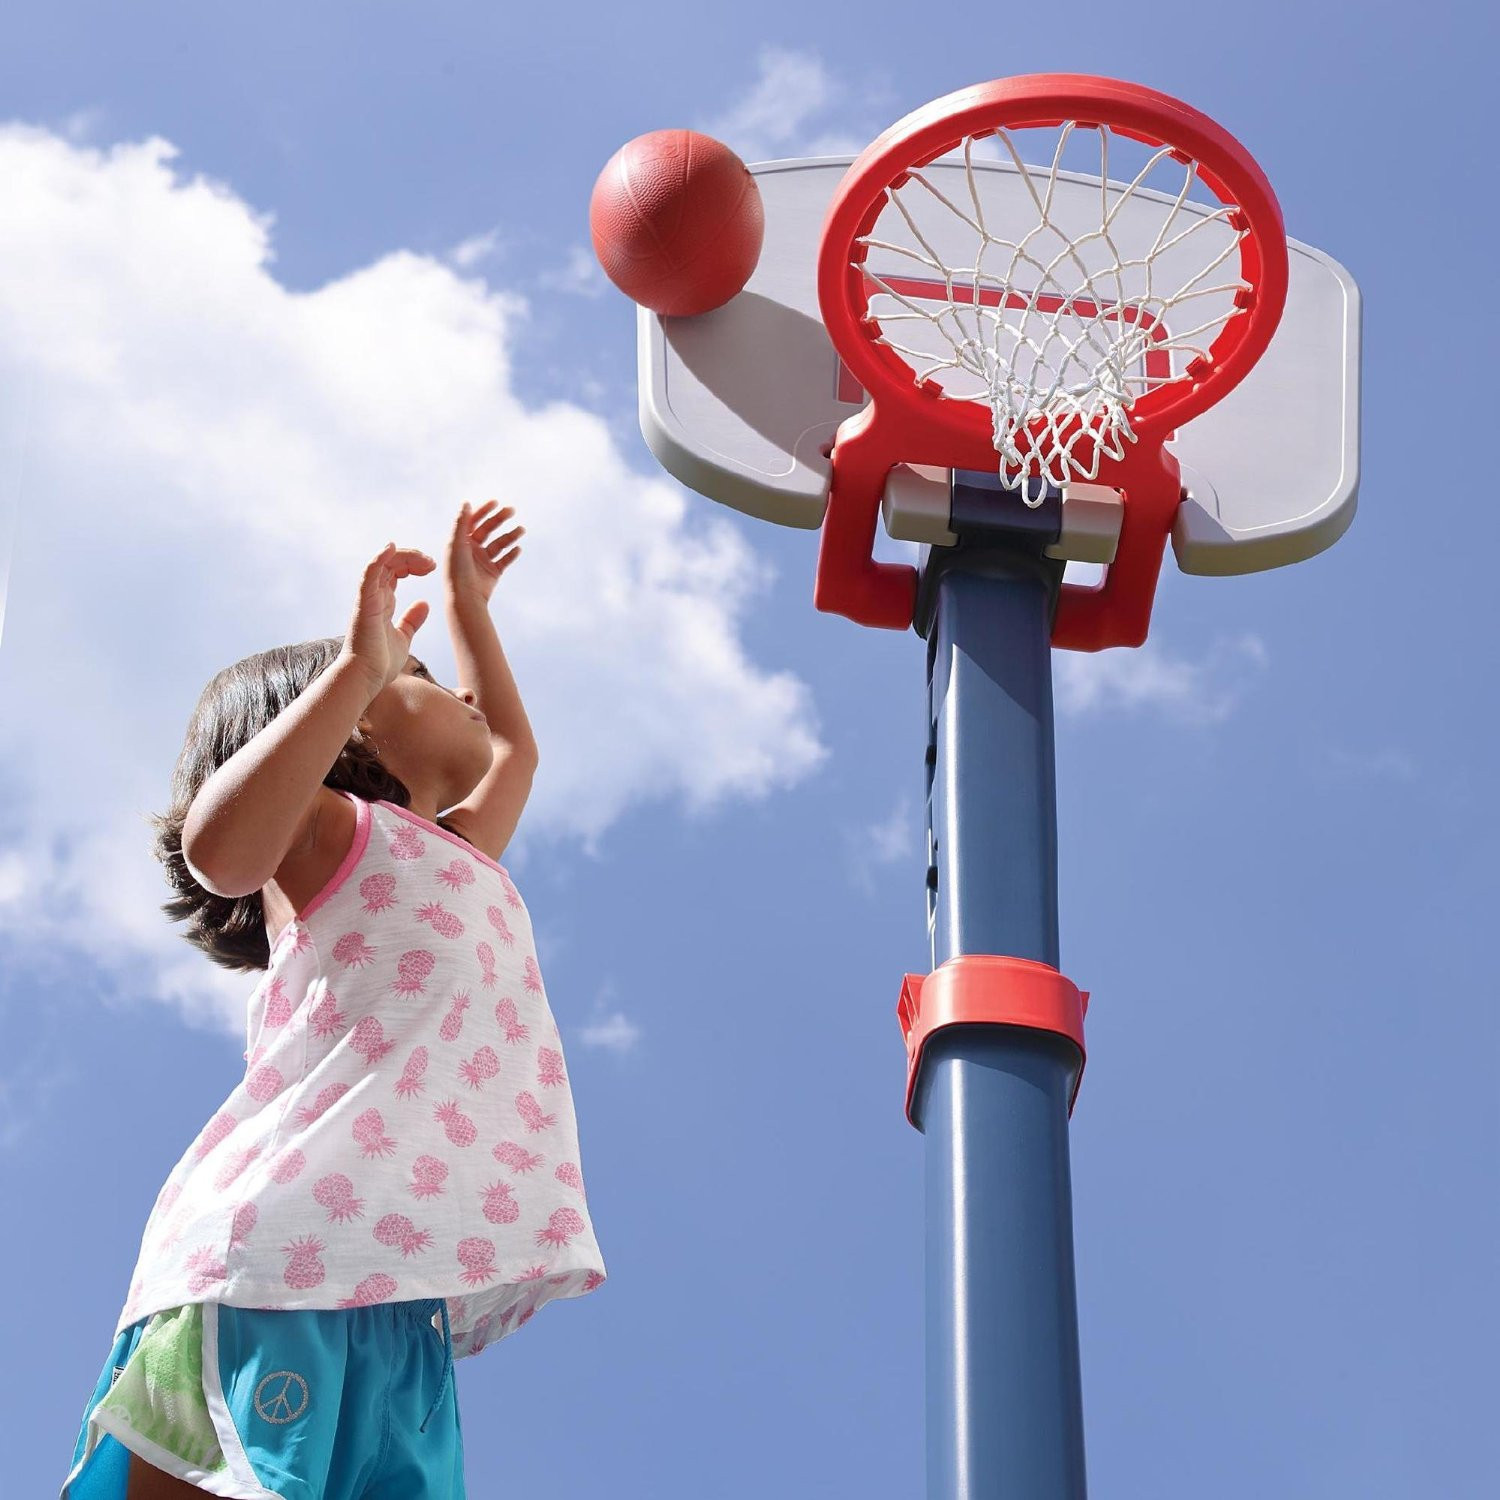 Kids Indoor Basketball Hoop
 Buy Adjustable Basketball Hoop For Kids Indoor Outdoor